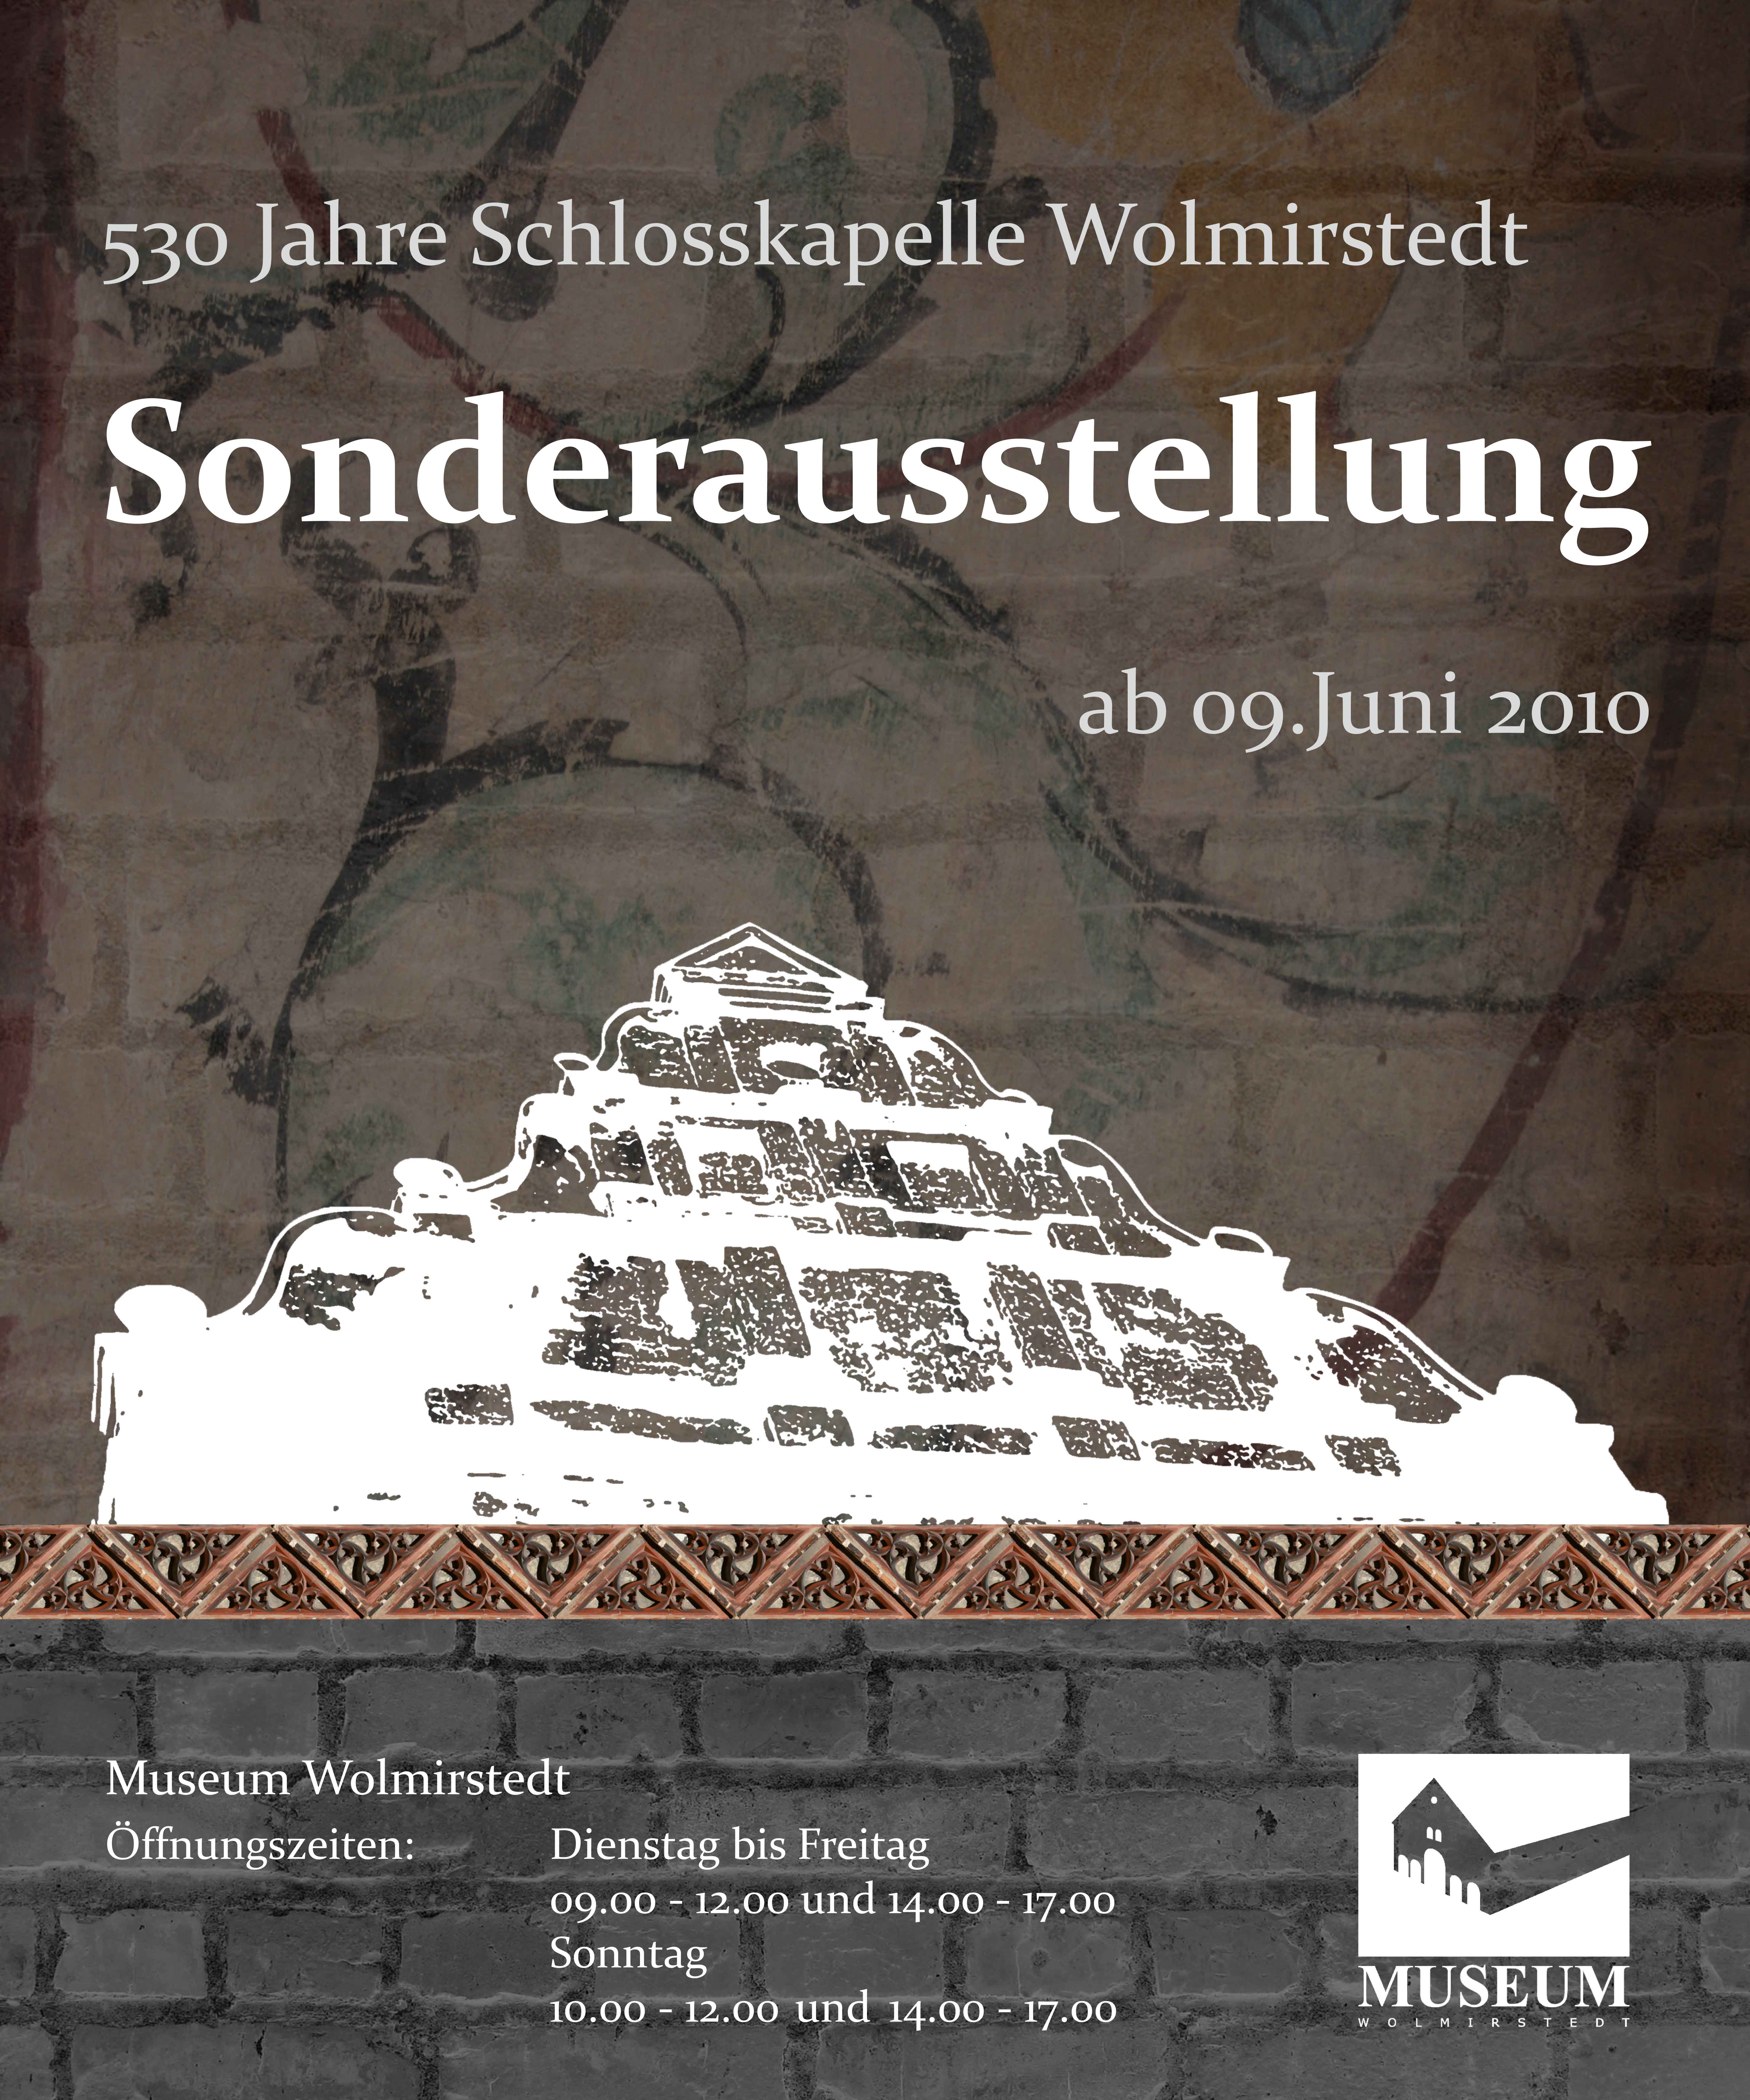 Ausstellungsplakat Sonderausstellung "530 Jahre Schlosskapelle Wolmirstedt" (Museum Wolmirstedt RR-F)